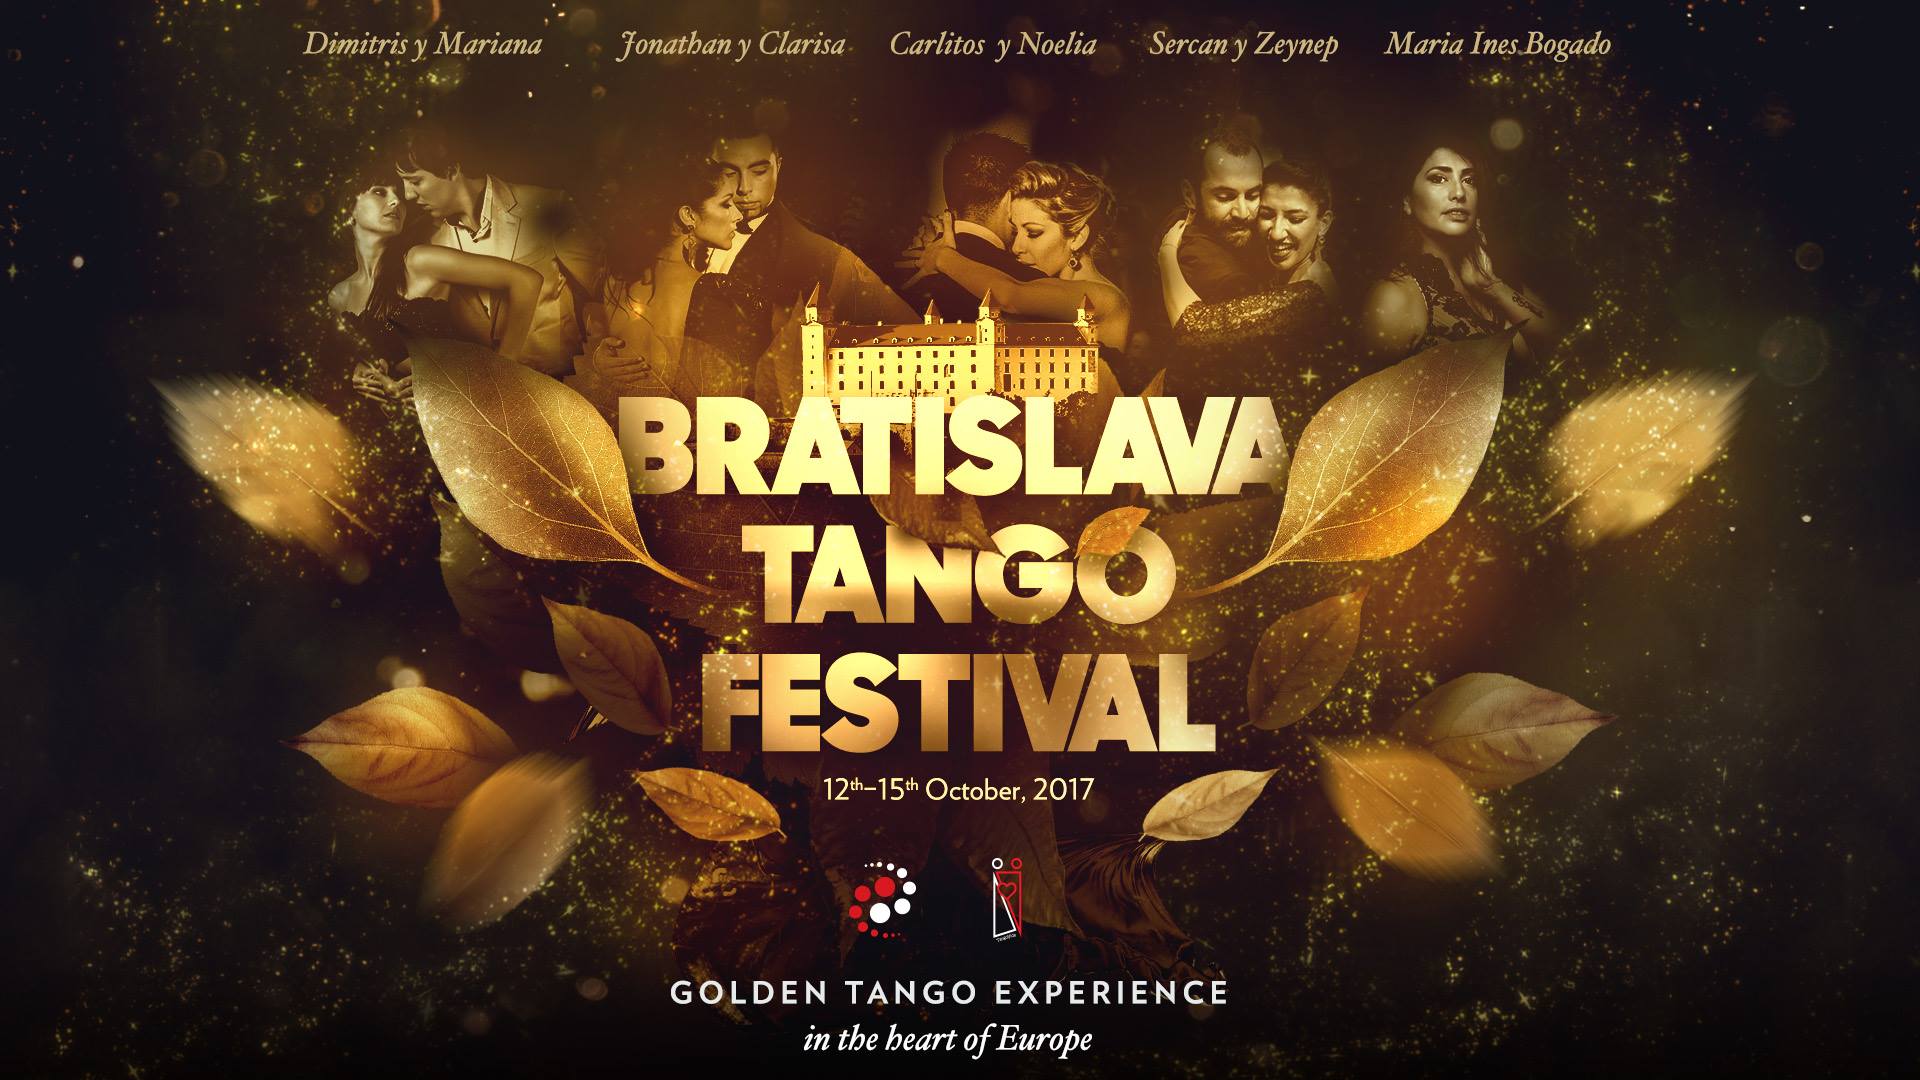 Bratislava Tango Festival 2017 event picture